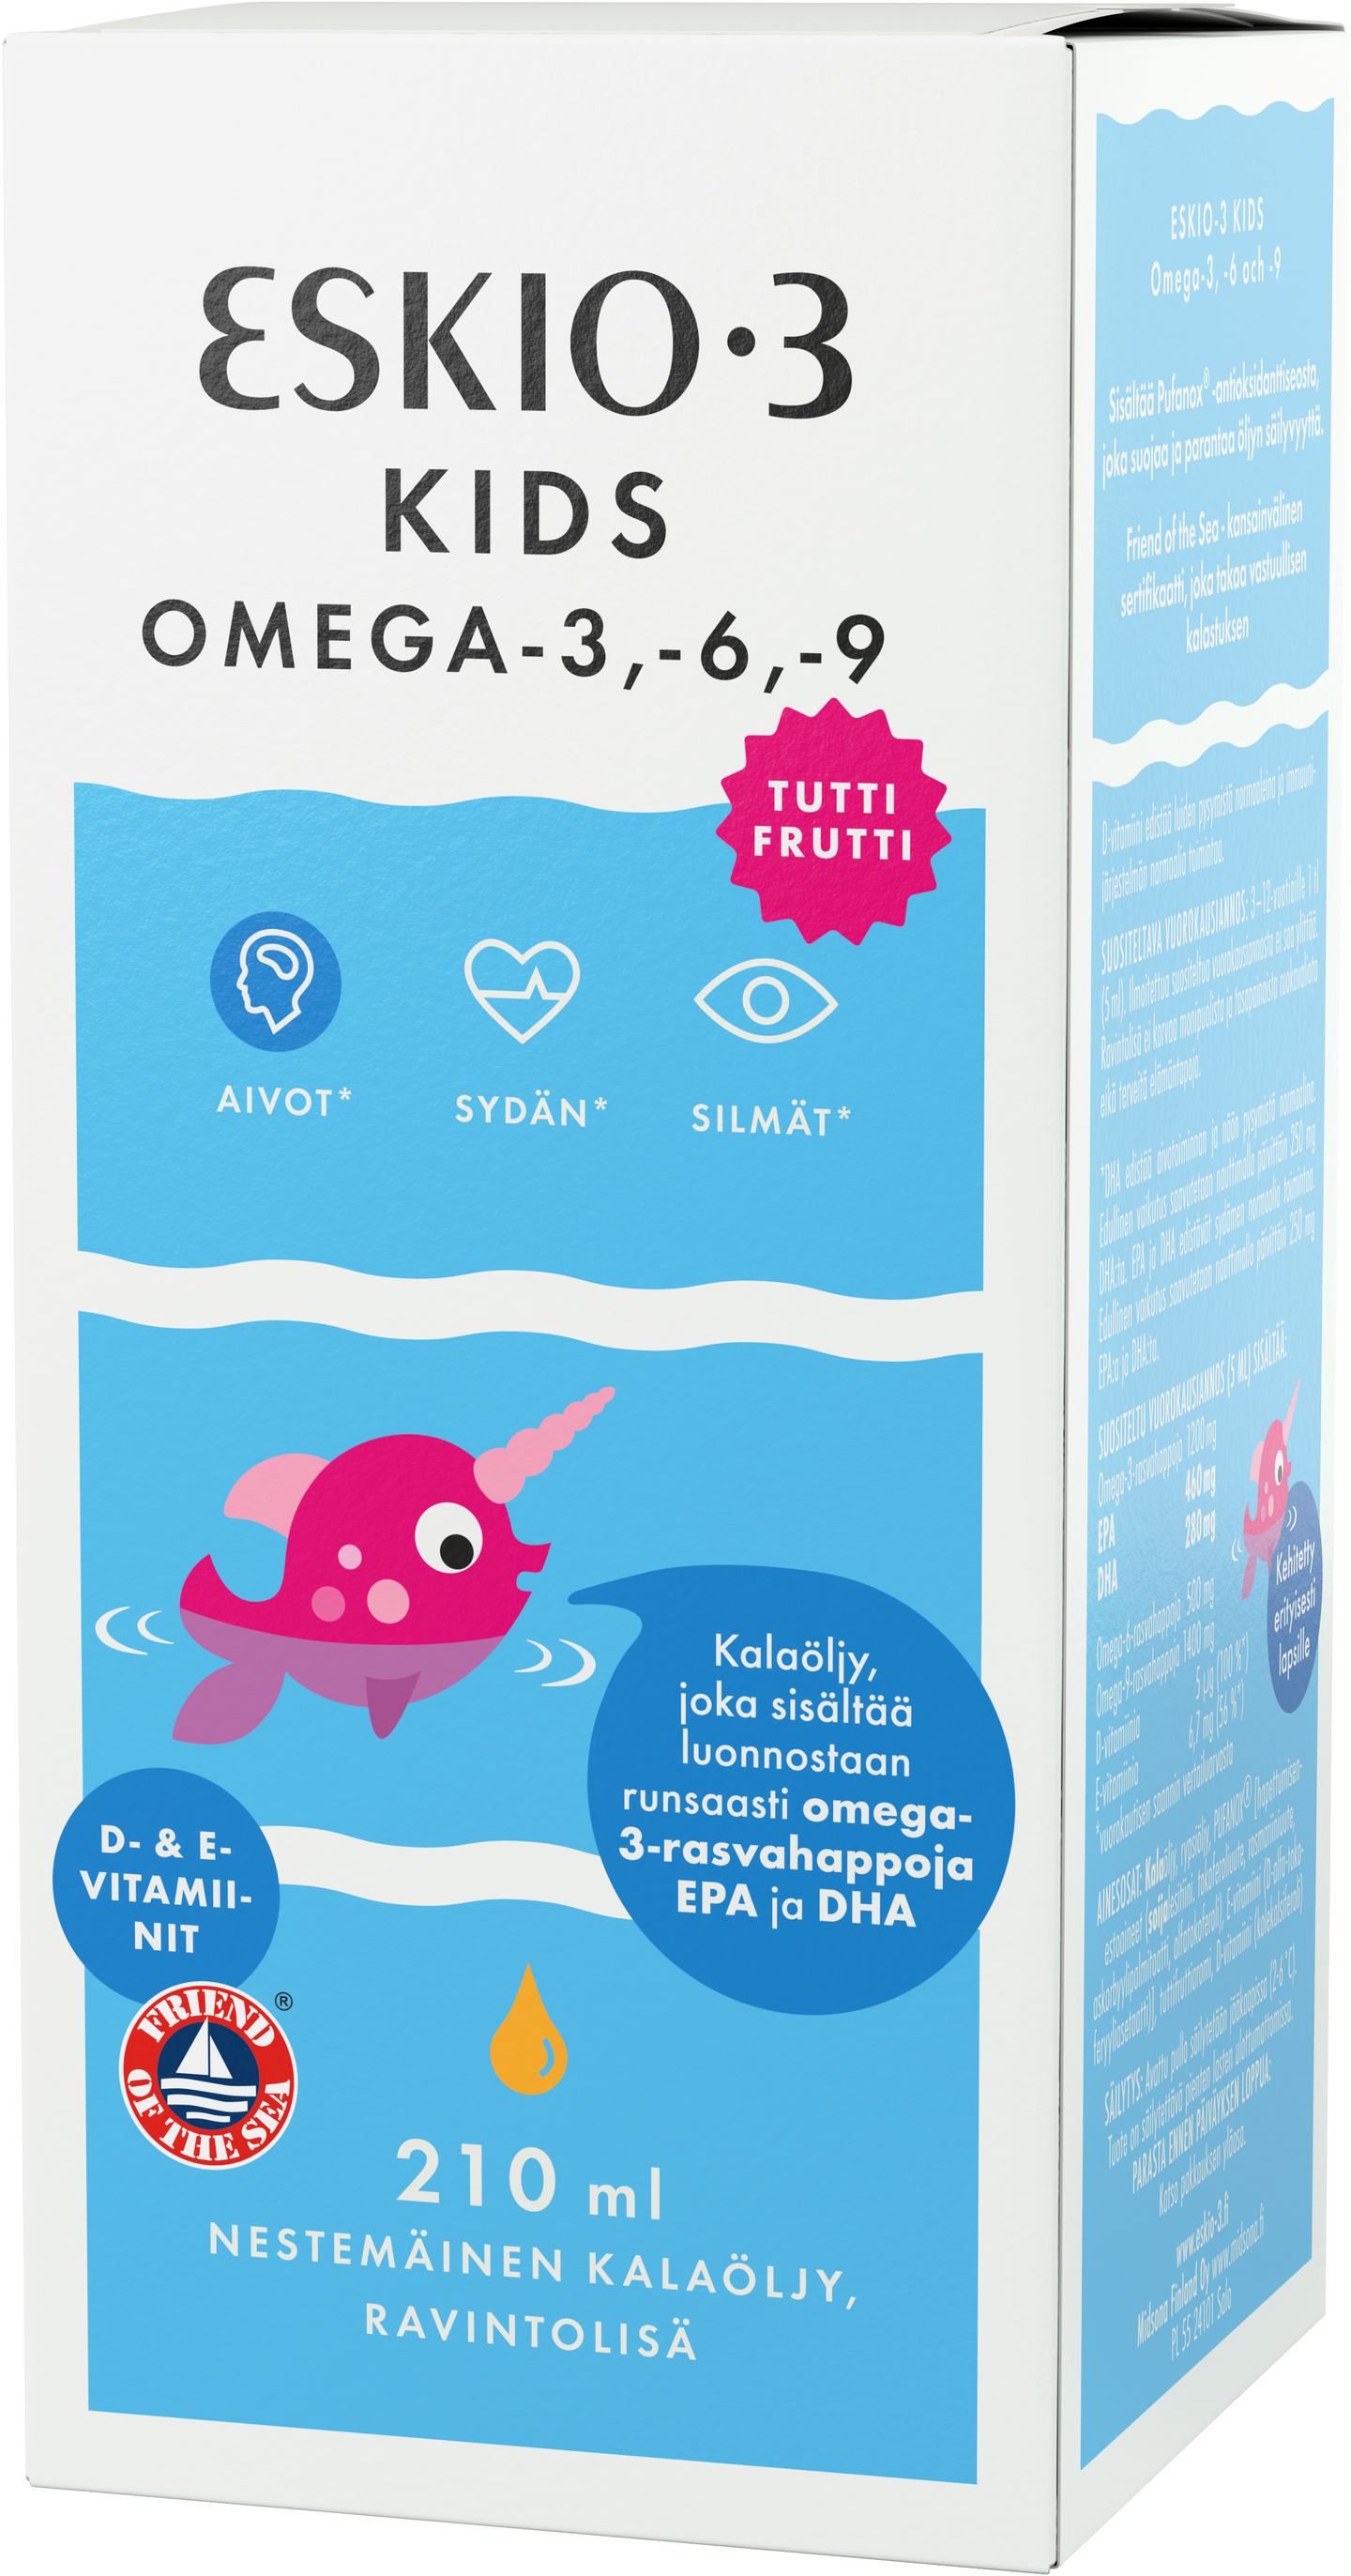 Eskio 3 Kids Omega 3-6-9 nestämäinen kalaöljy 210ml TuttiFrutti